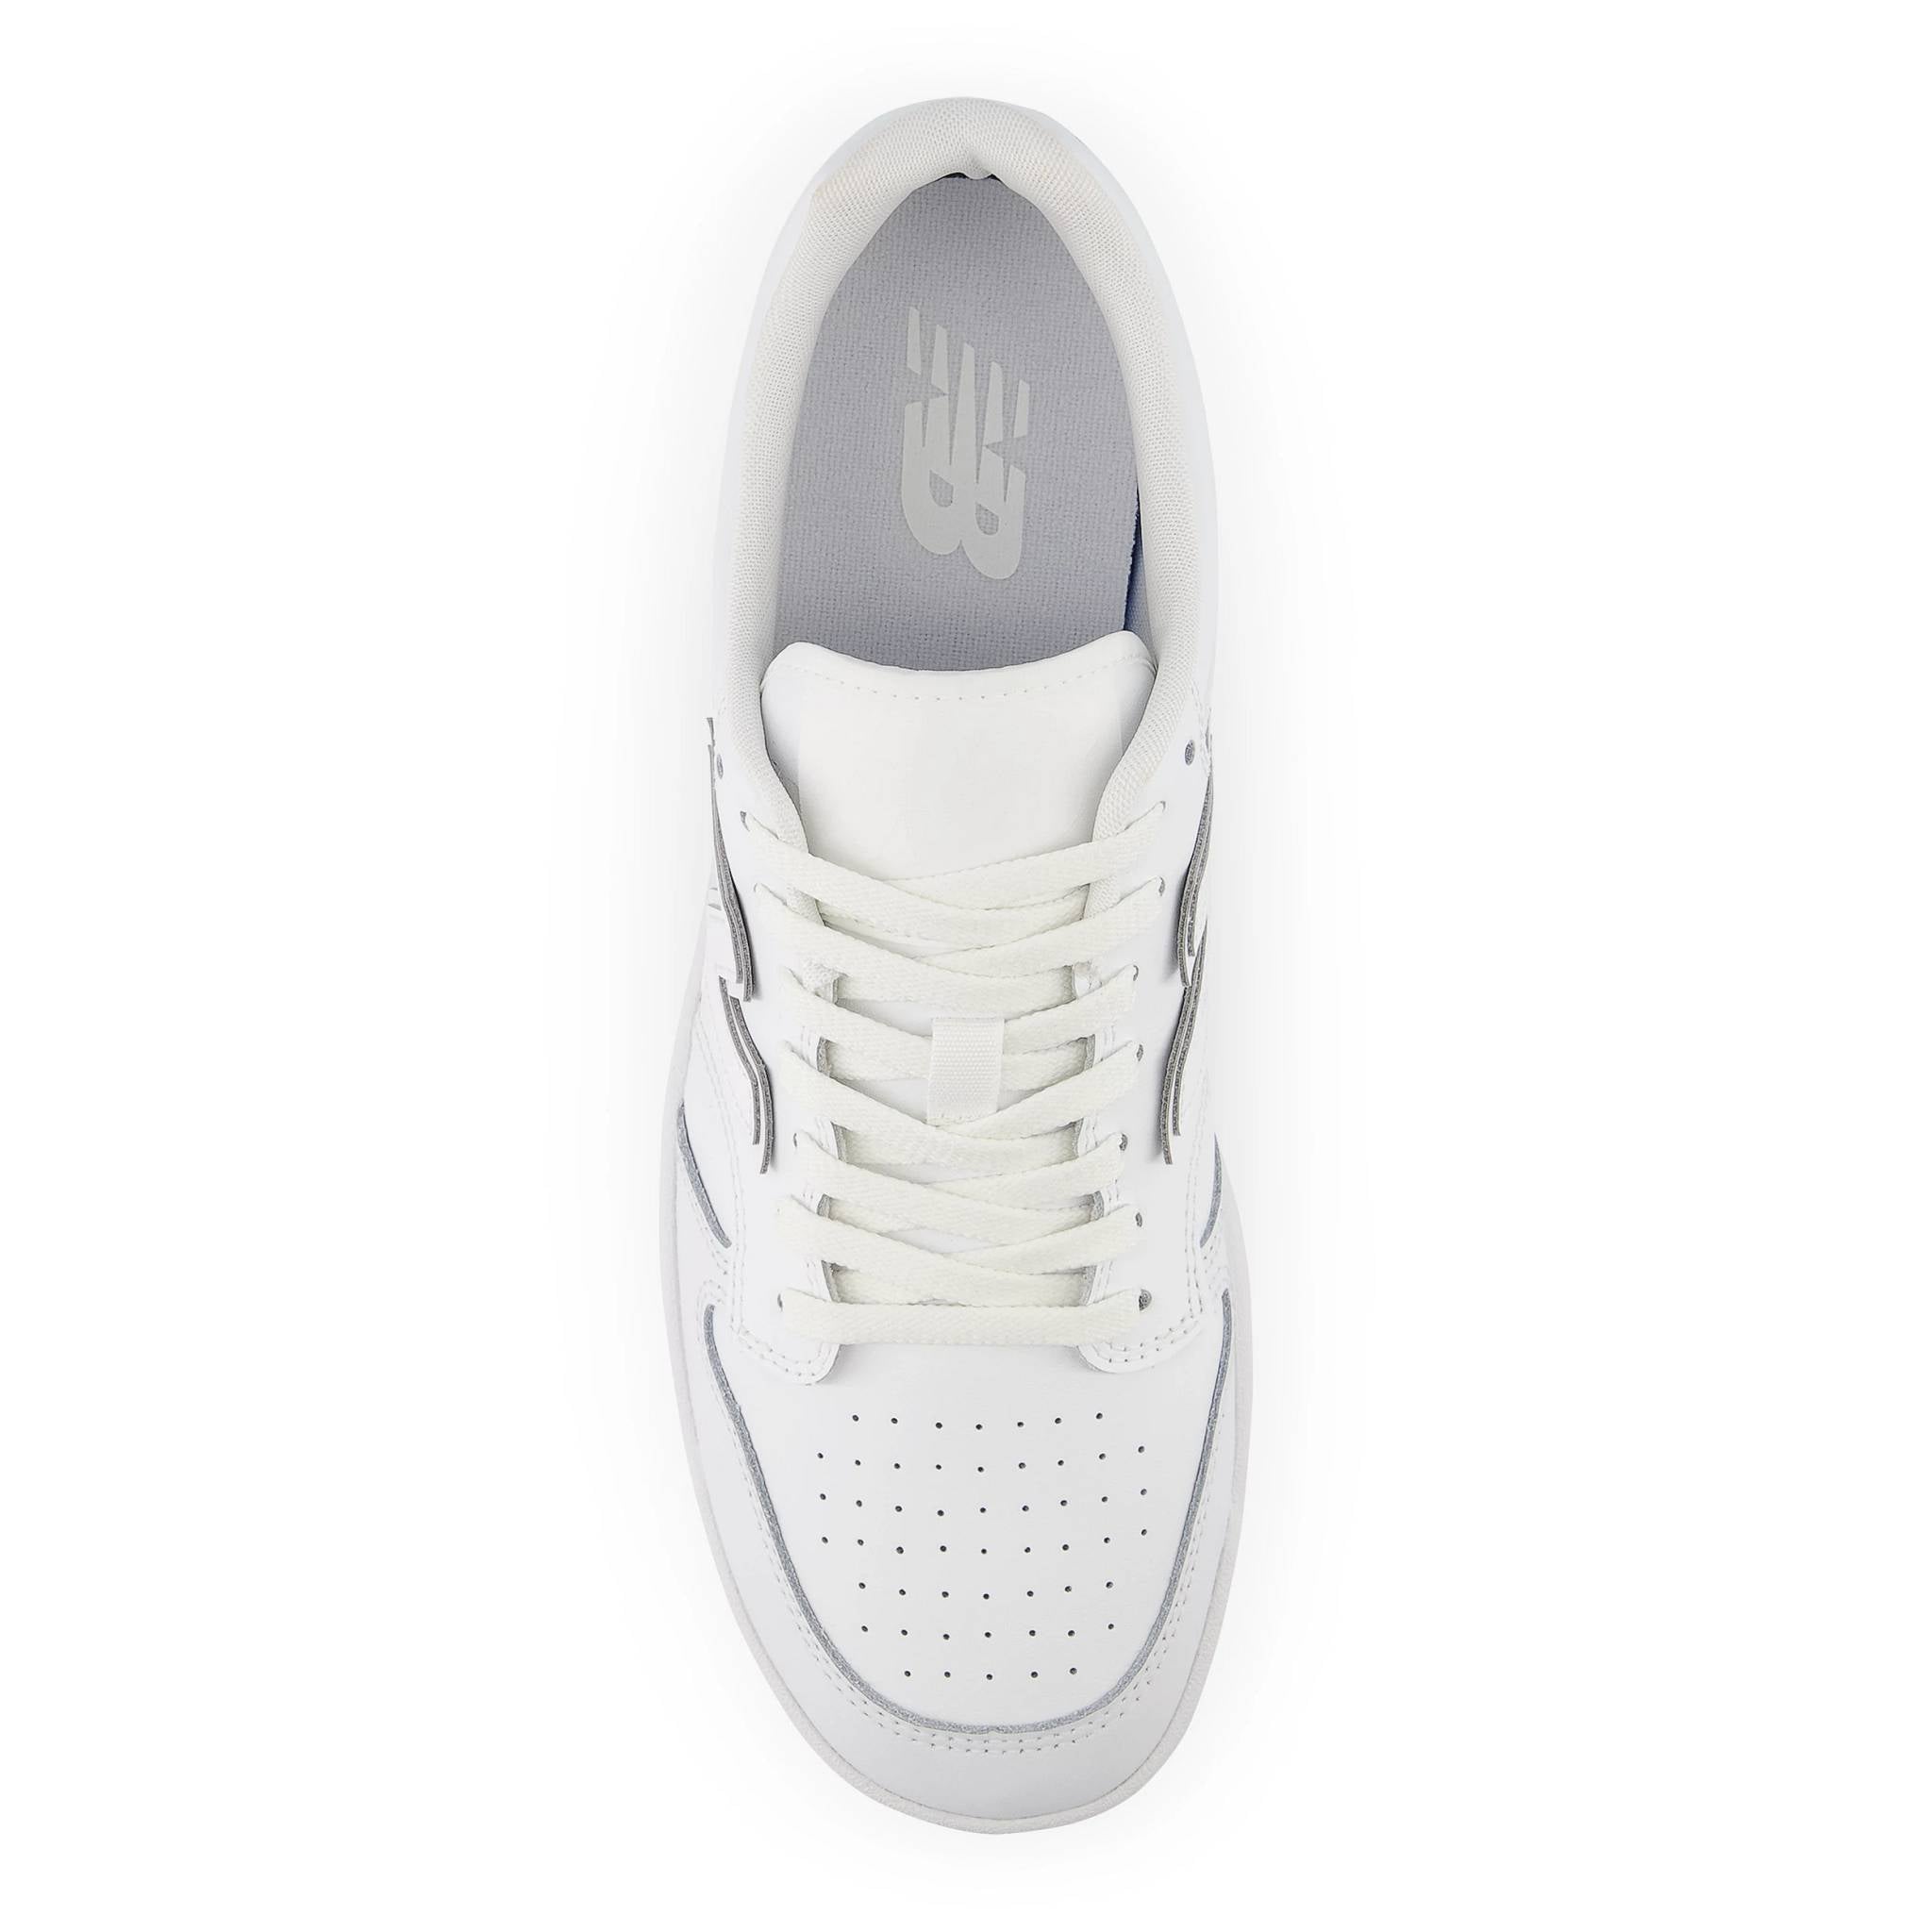 NEW BALANCE BB480L3W sneaker - White